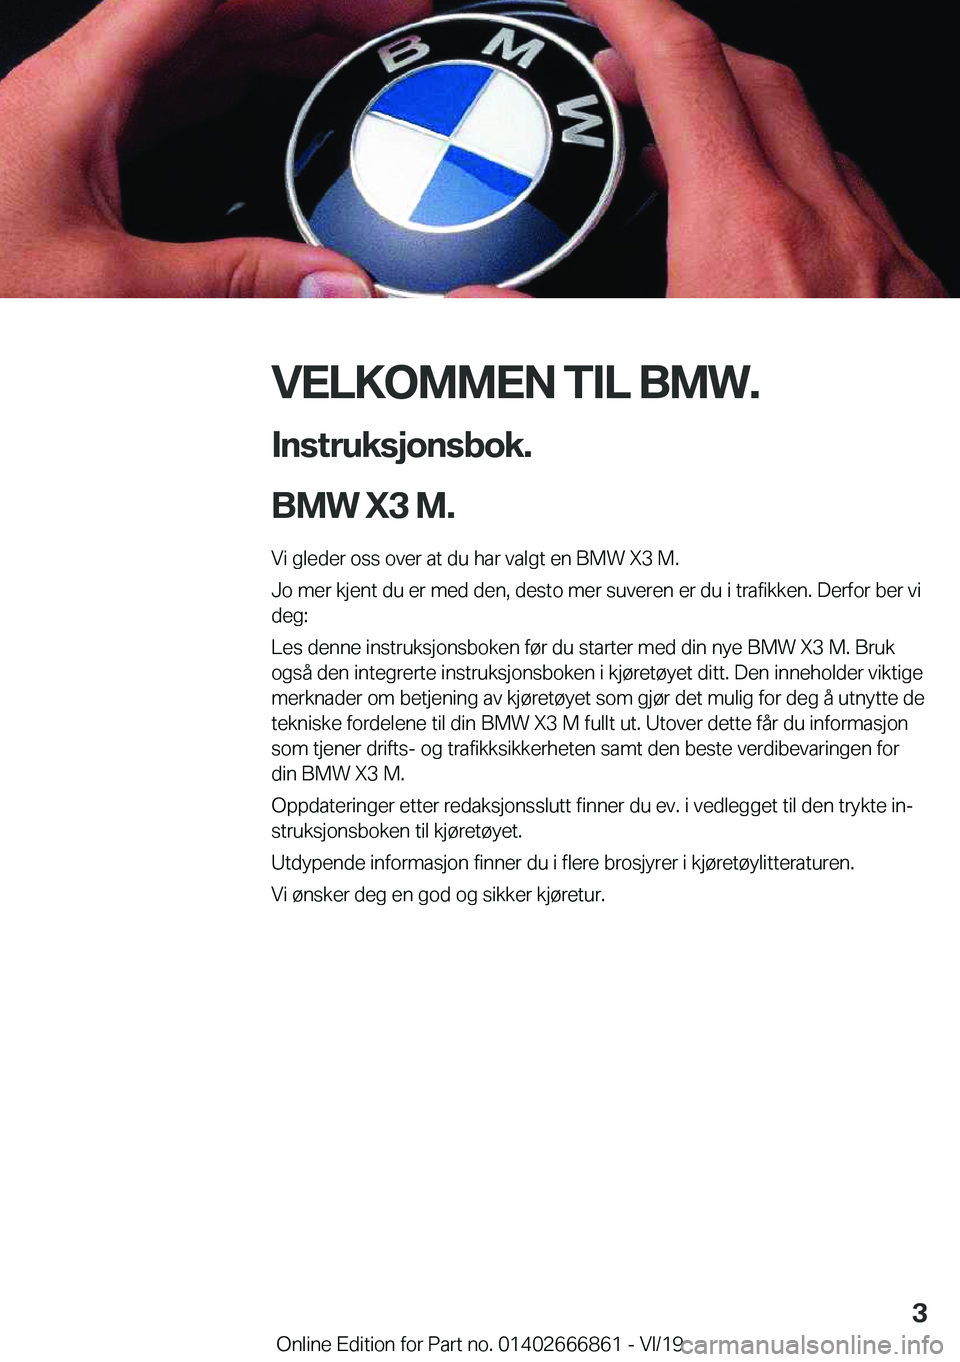 BMW X3 M 2020  InstruksjonsbØker (in Norwegian) �V�E�L�K�O�M�M�E�N��T�I�L��B�M�W�.�I�n�s�t�r�u�k�s�j�o�n�s�b�o�k�.
�B�M�W��X�3��M�.
�V�i��g�l�e�d�e�r��o�s�s��o�v�e�r��a�t��d�u��h�a�r��v�a�l�g�t��e�n��B�M�W��X�3��M�.
�J�o��m�e�r��k�